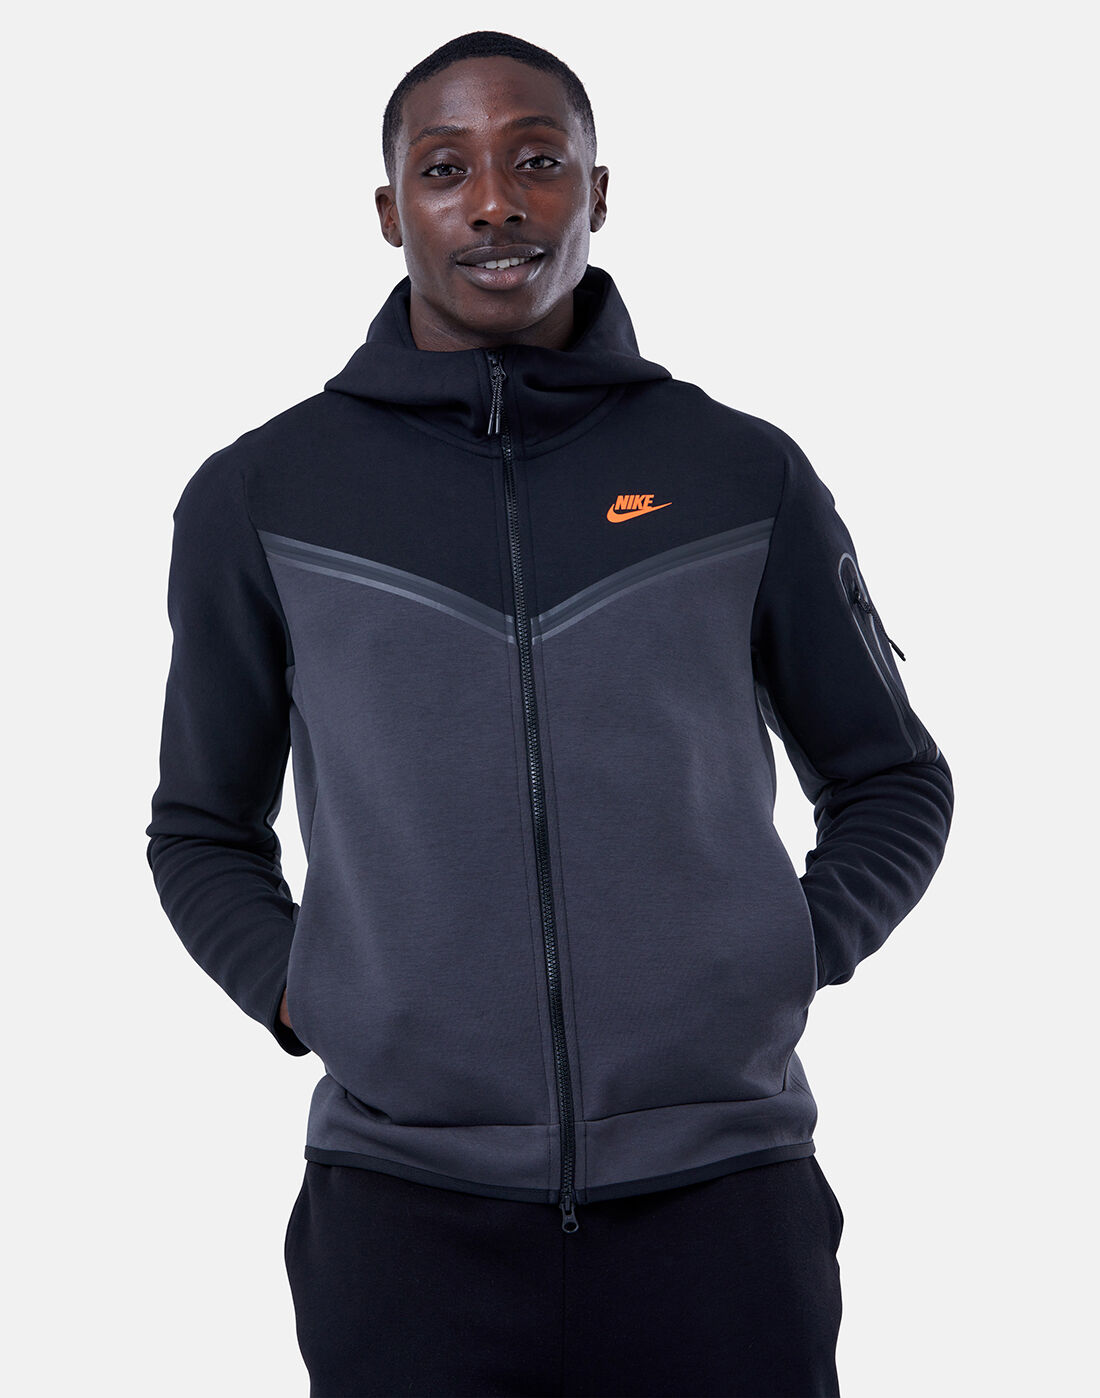 Nike Mens Tech Fleece Full Zip Hoodie - Black | nmd r2 pk black